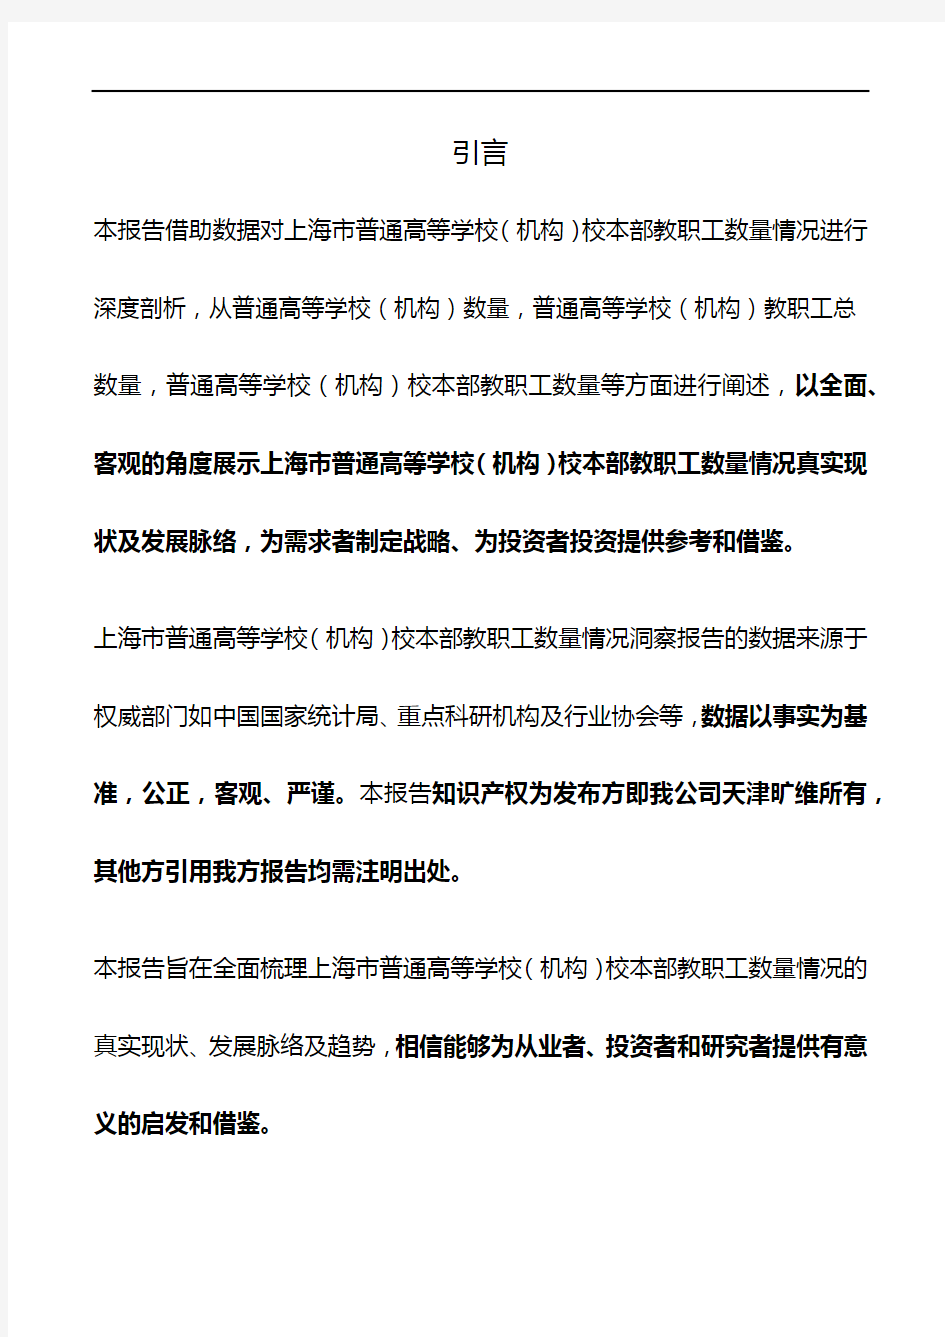 上海市普通高等学校(机构)校本部教职工数量情况3年数据洞察报告2019版